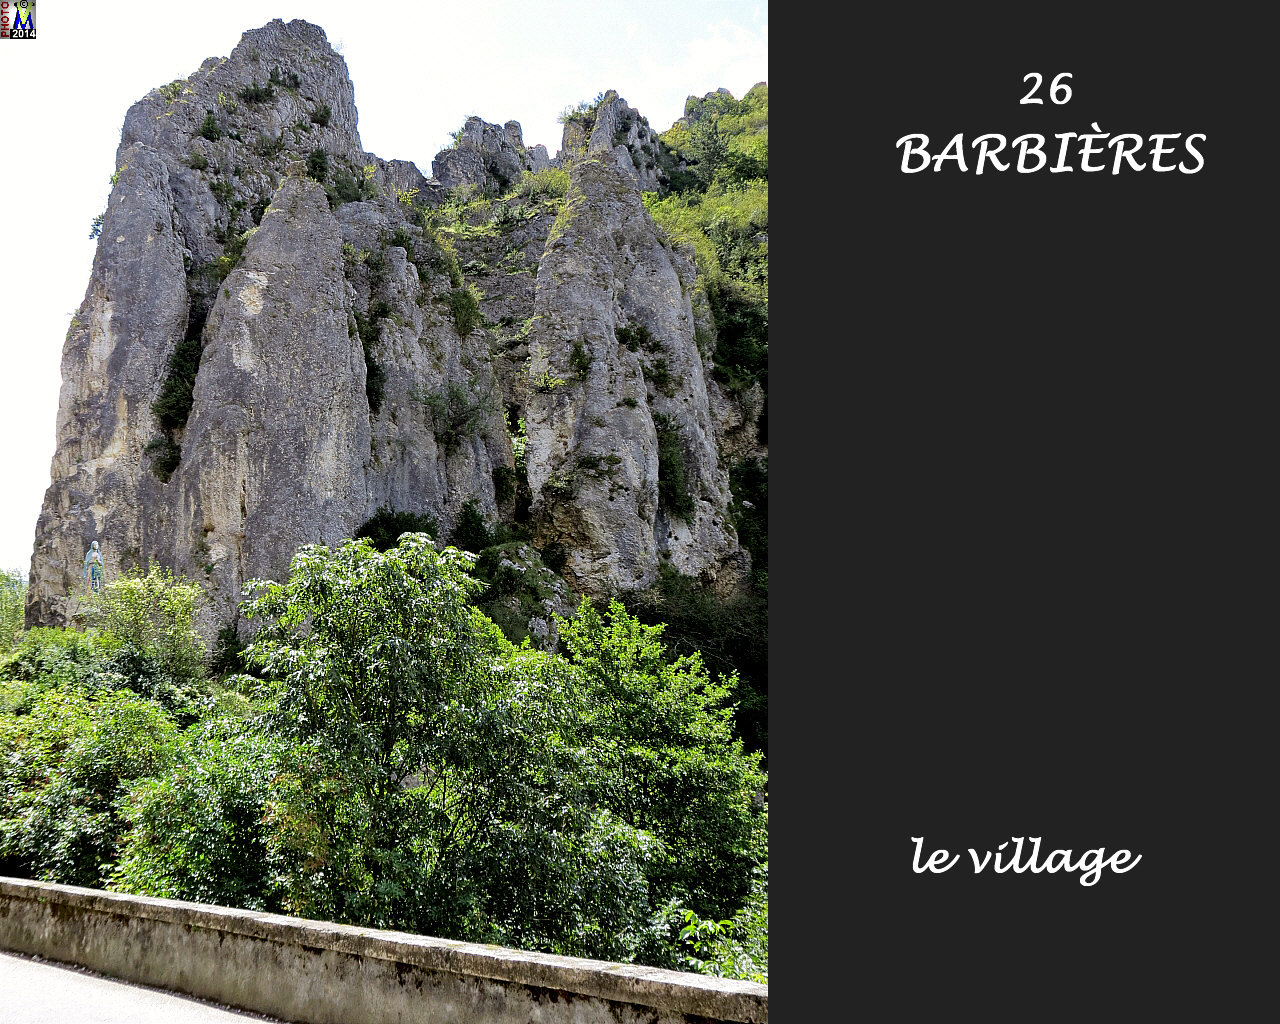 26BARBIERES_village_122.jpg